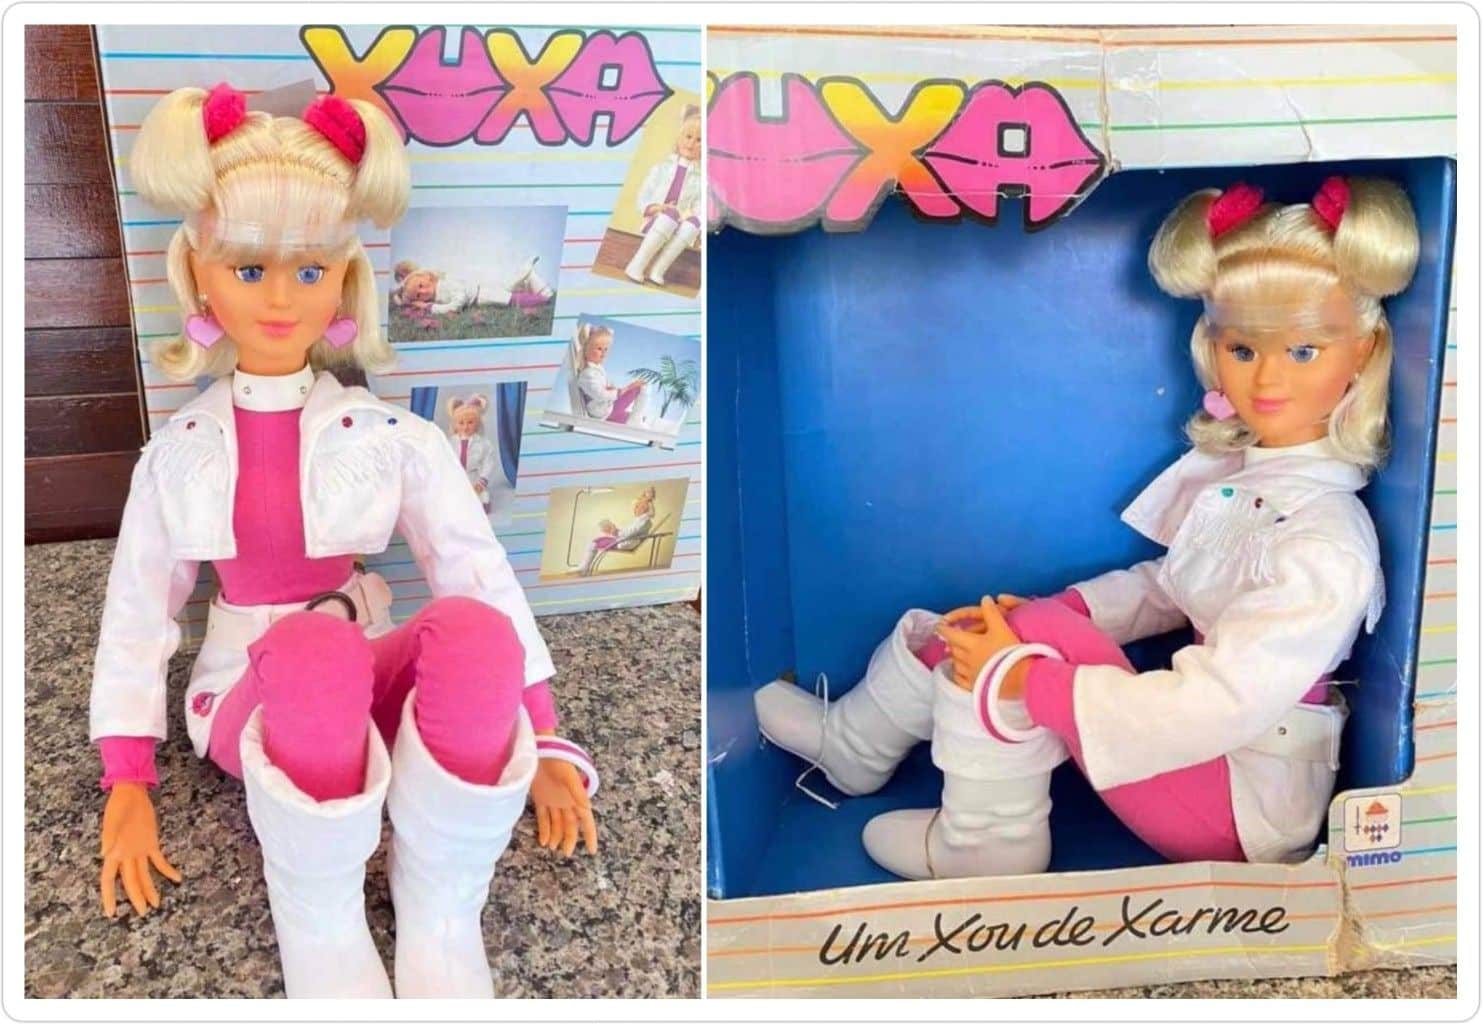 Boneca da Xuxa - Conheça a lenda urbana assustadora de 1989